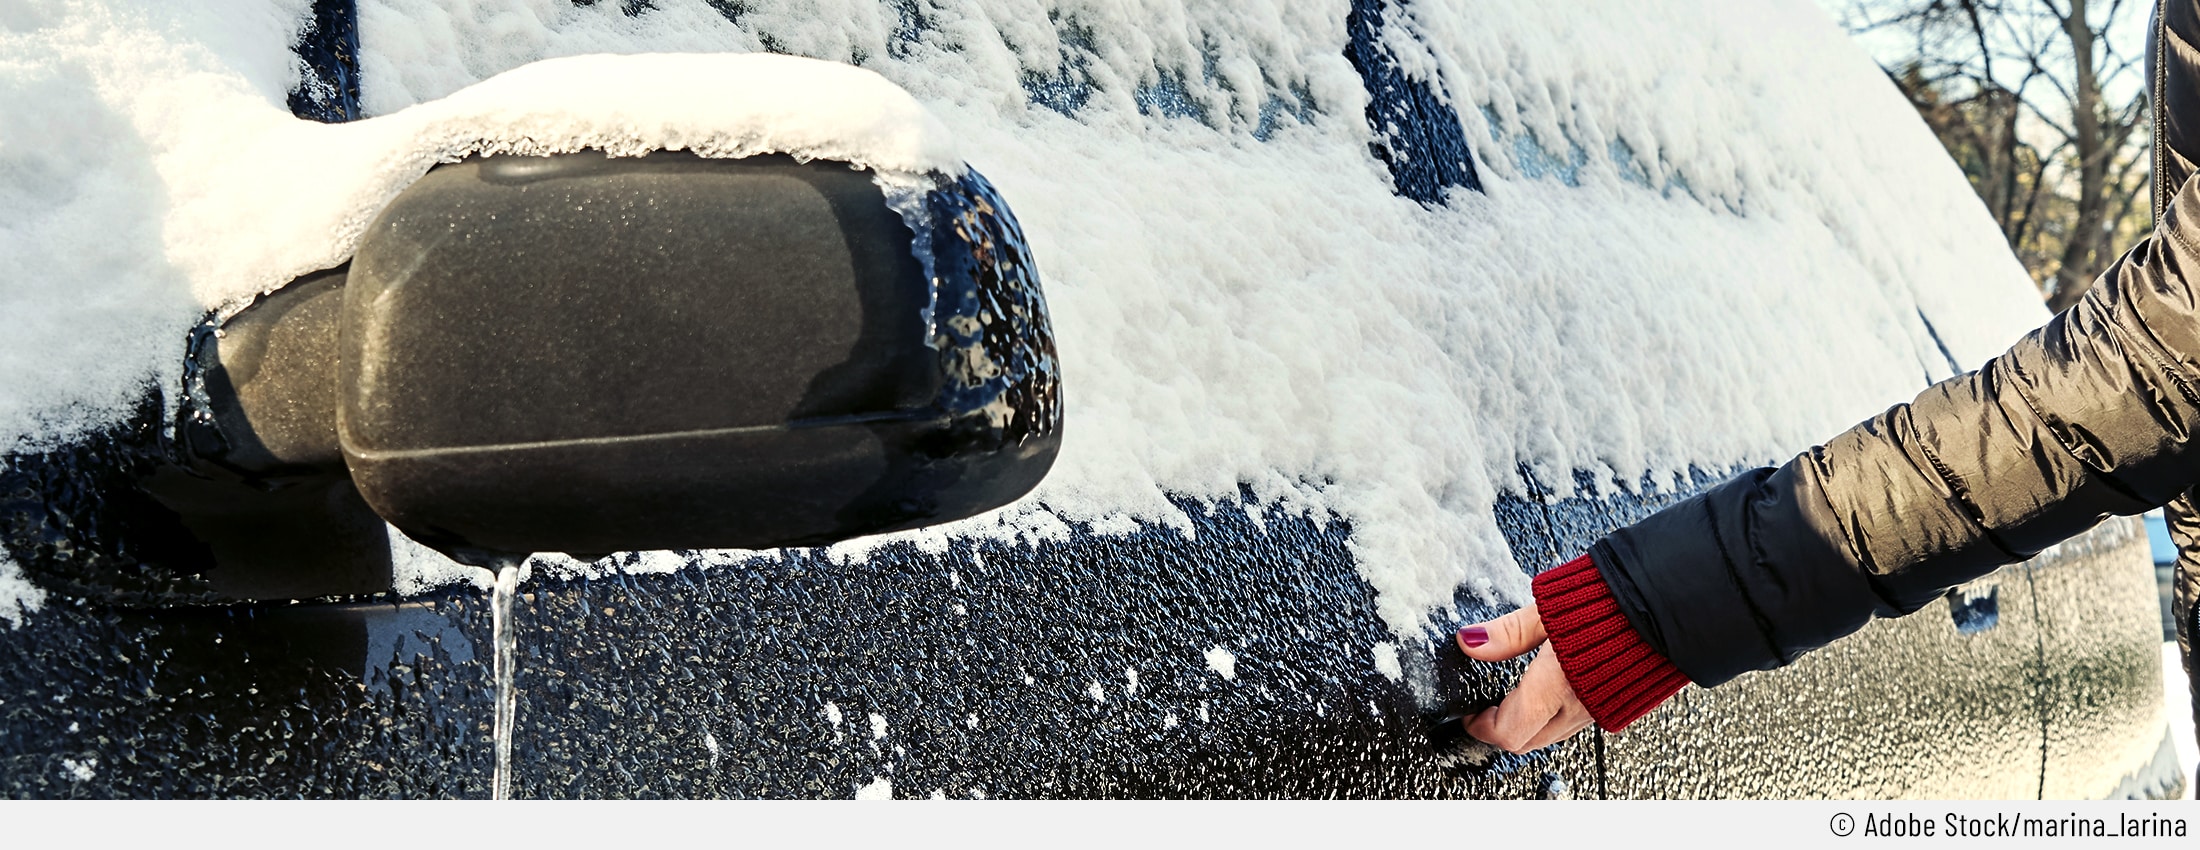 Gewalt ist keine Lösung: Ratgeber: Was tun bei eingefrorener Autotür? - WELT